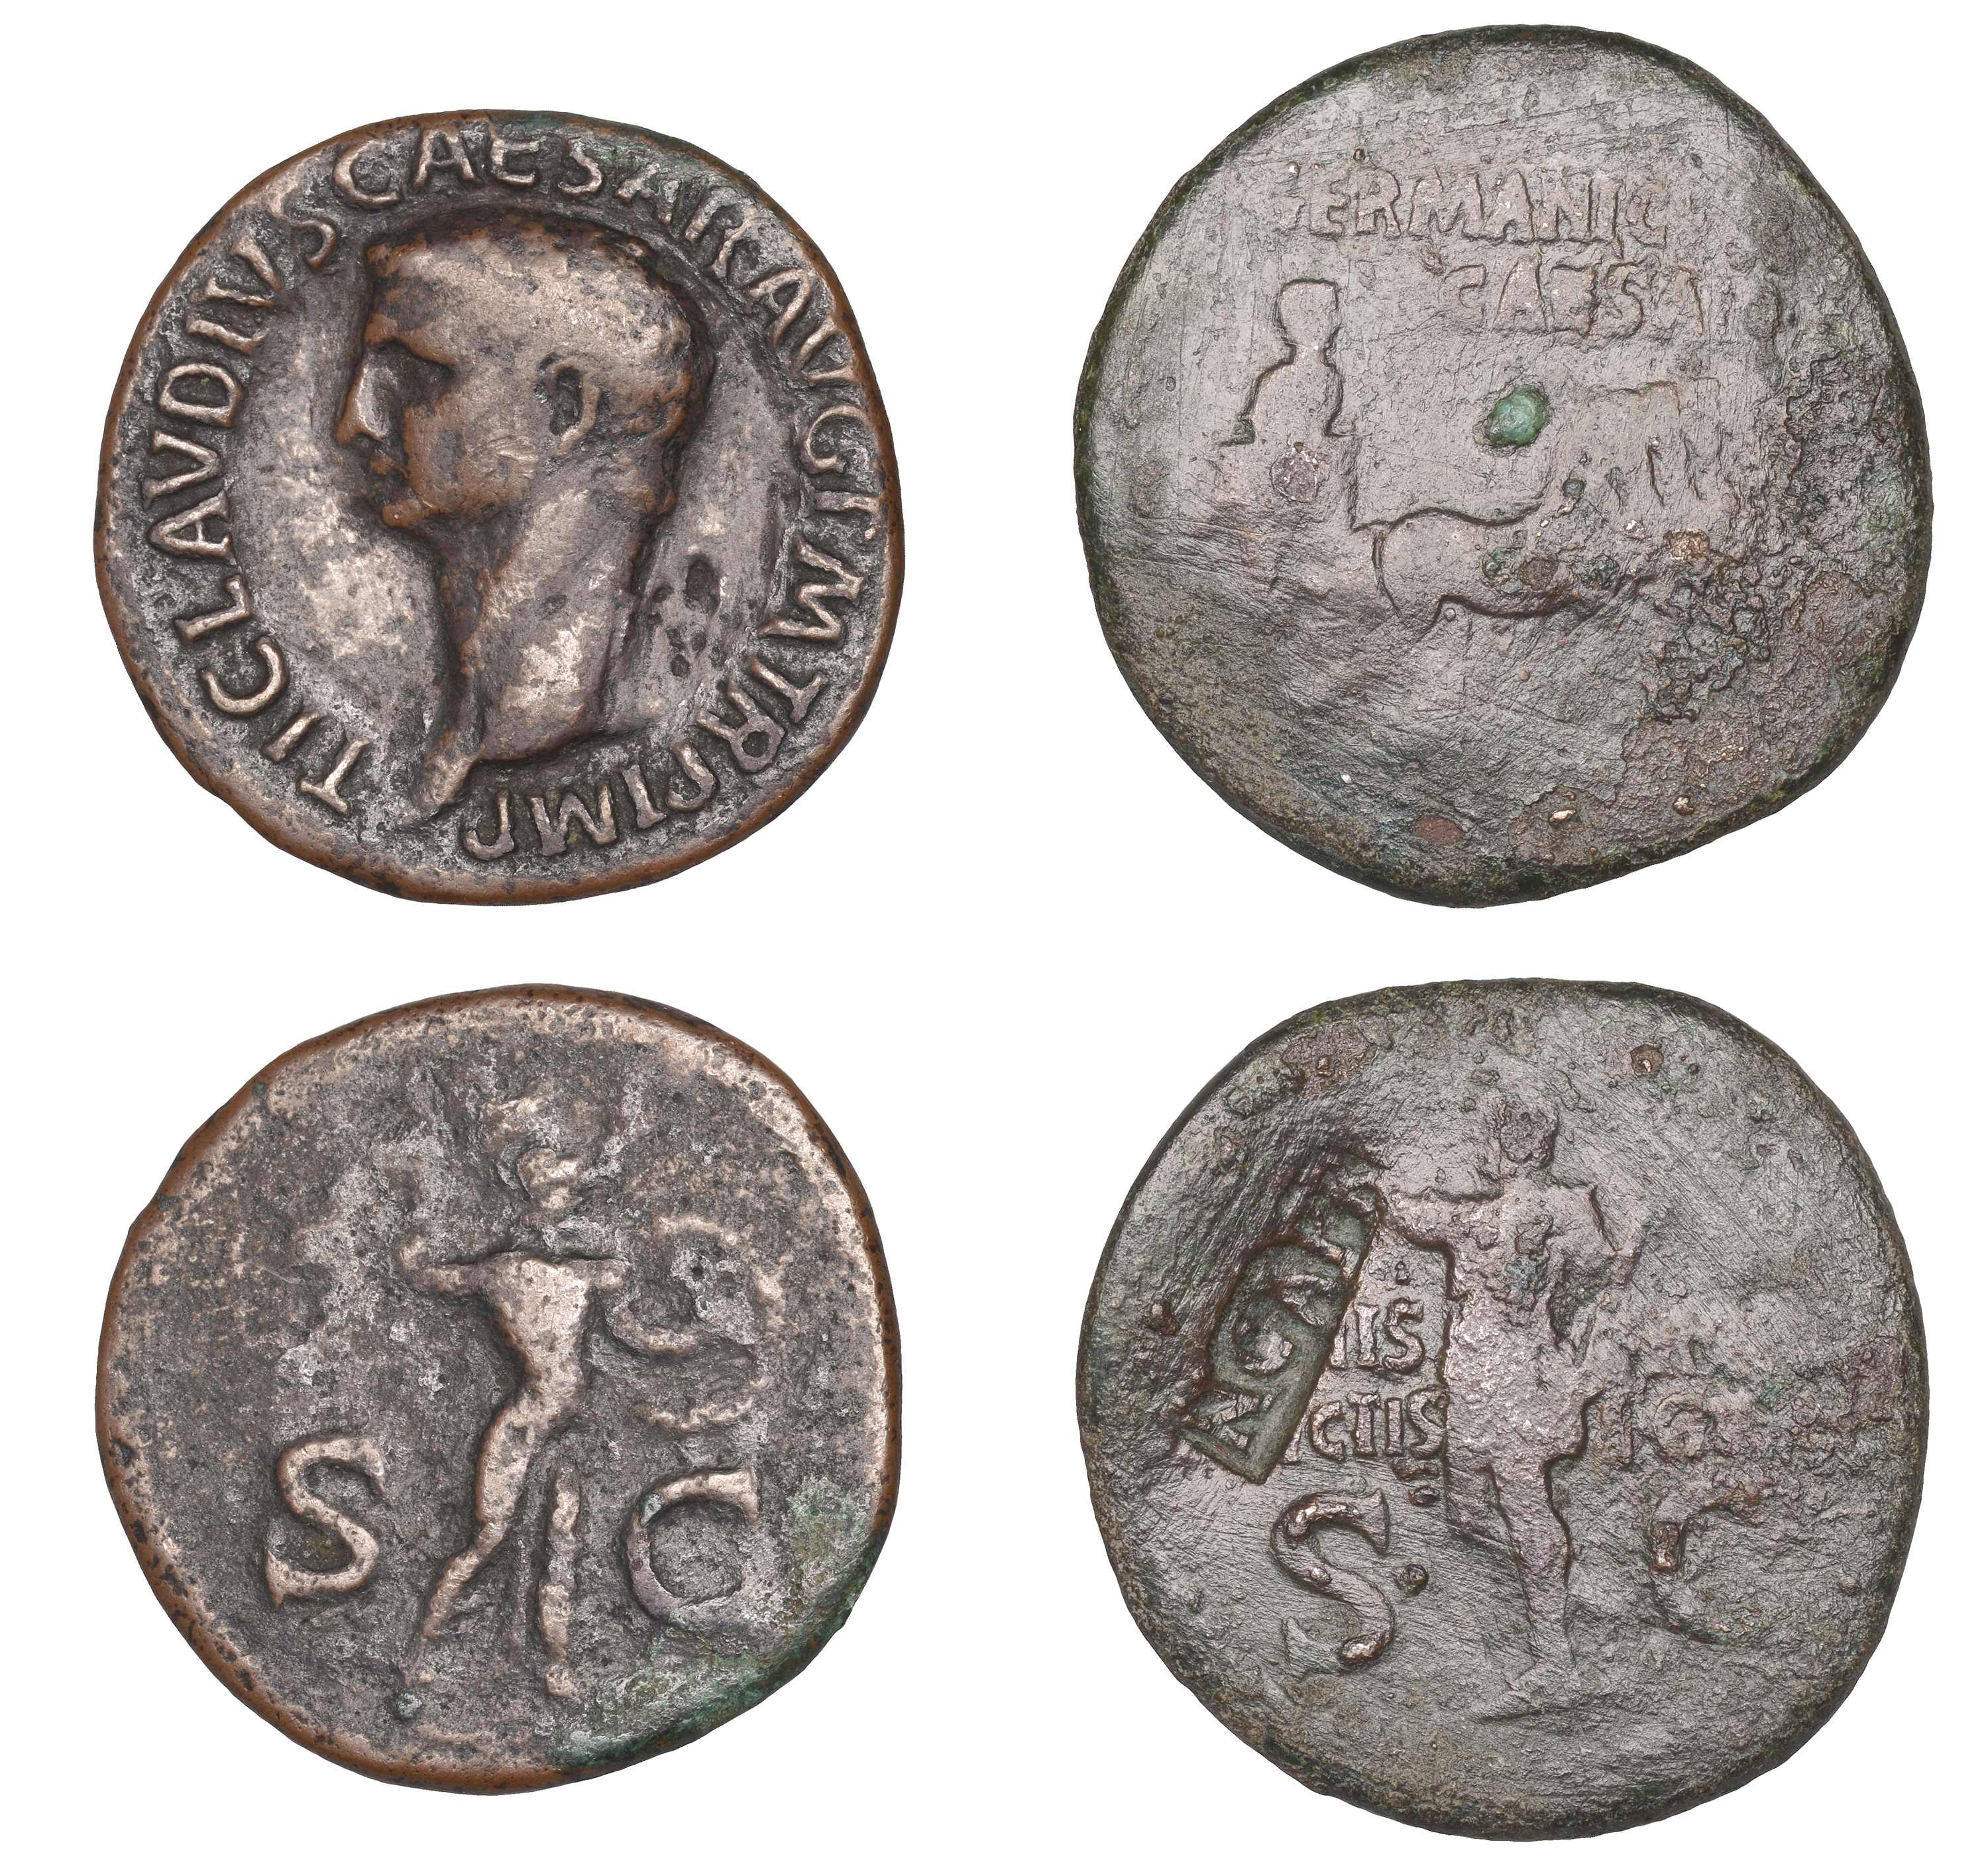 Roman Imperial Coinage, Germanicus, Dupondius, restitution issue under Caligula, Rome, c. 37...